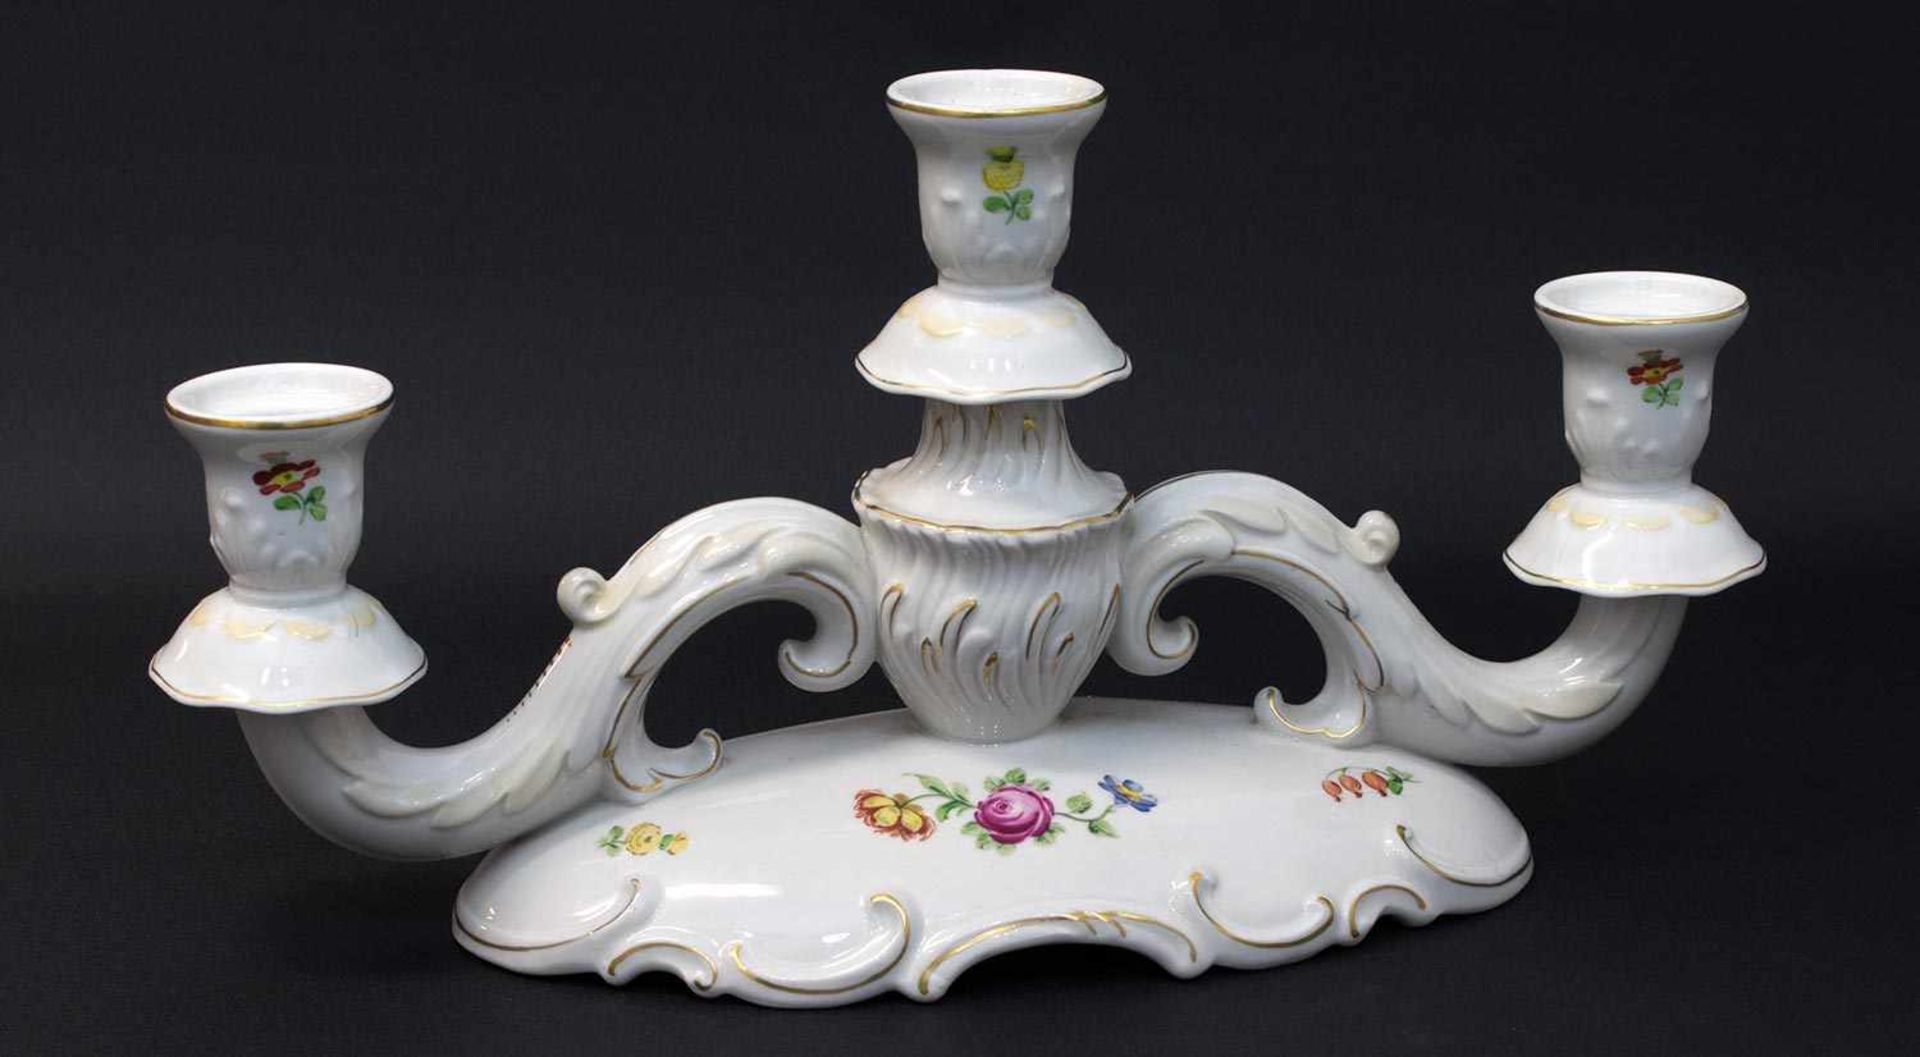 Tischleuchter Porzellanmanufaktur von Schierholz, Porzellan, 3-flammig mit handgemaltem Blütendekor,